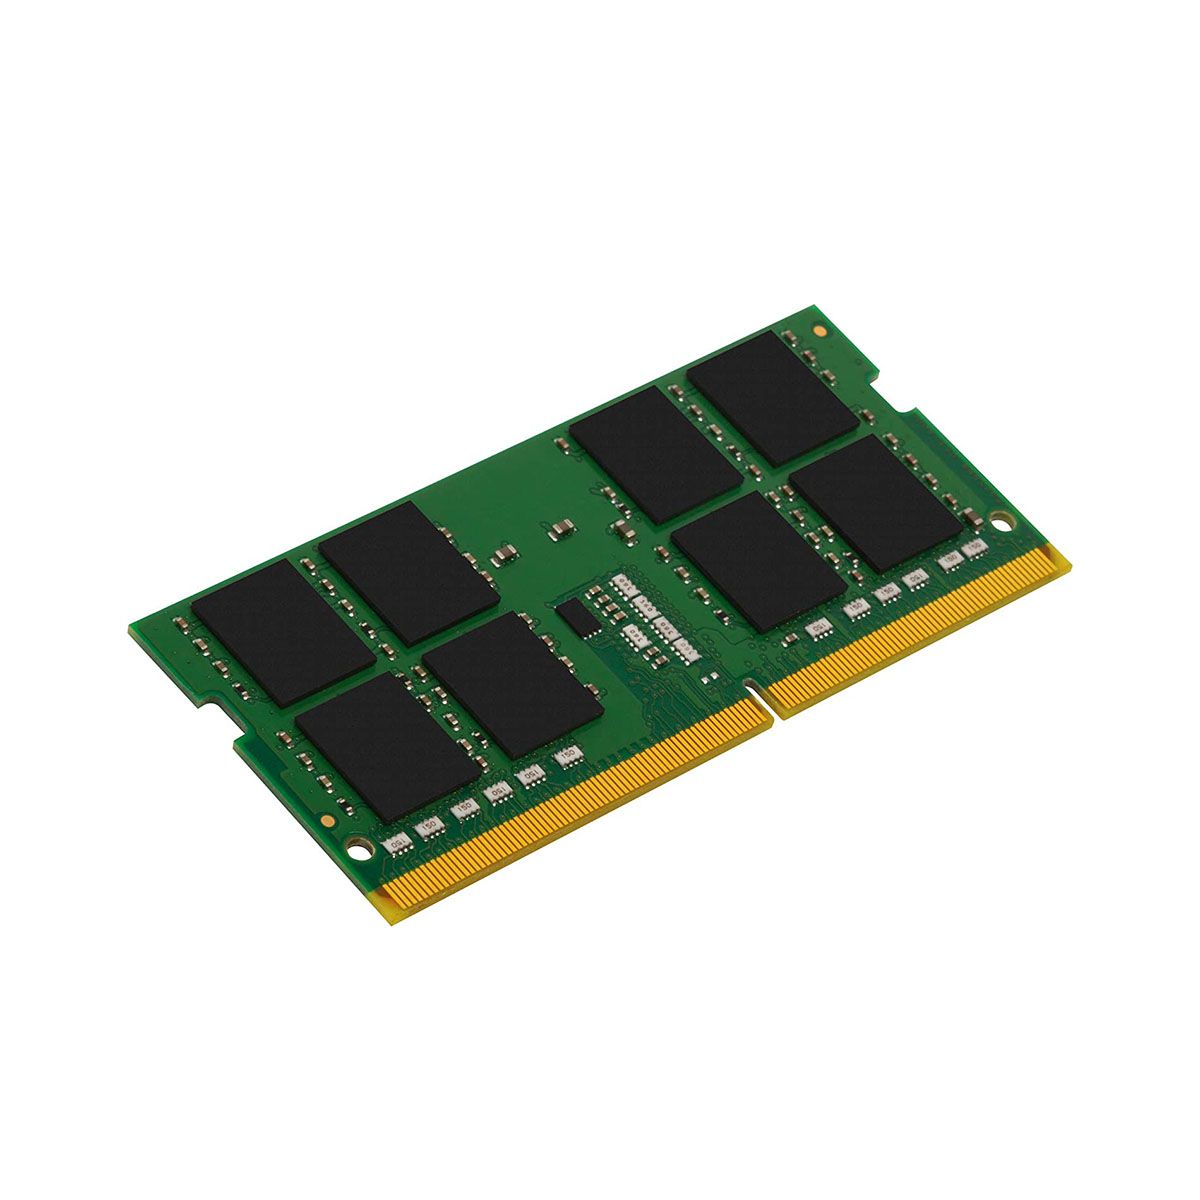 Kingston Value RAM 32GB (1x 32GB SODIMM) DDR4 3200MHz Non-ECC 1.2V